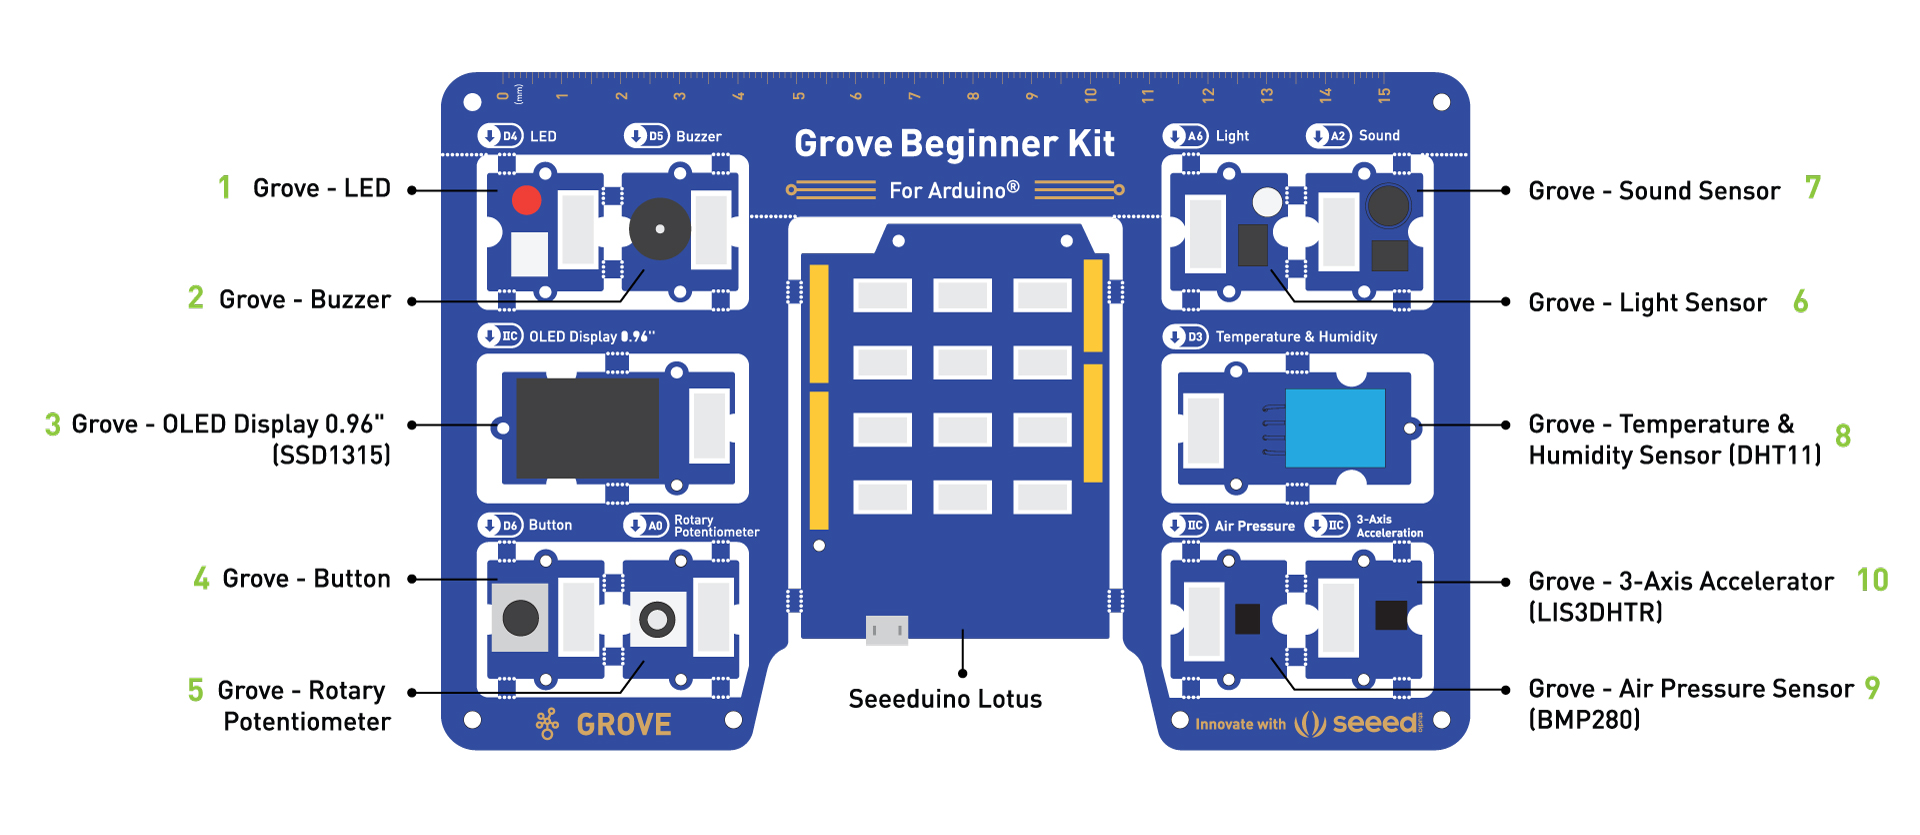 Grove beginner kit for Arduino overview